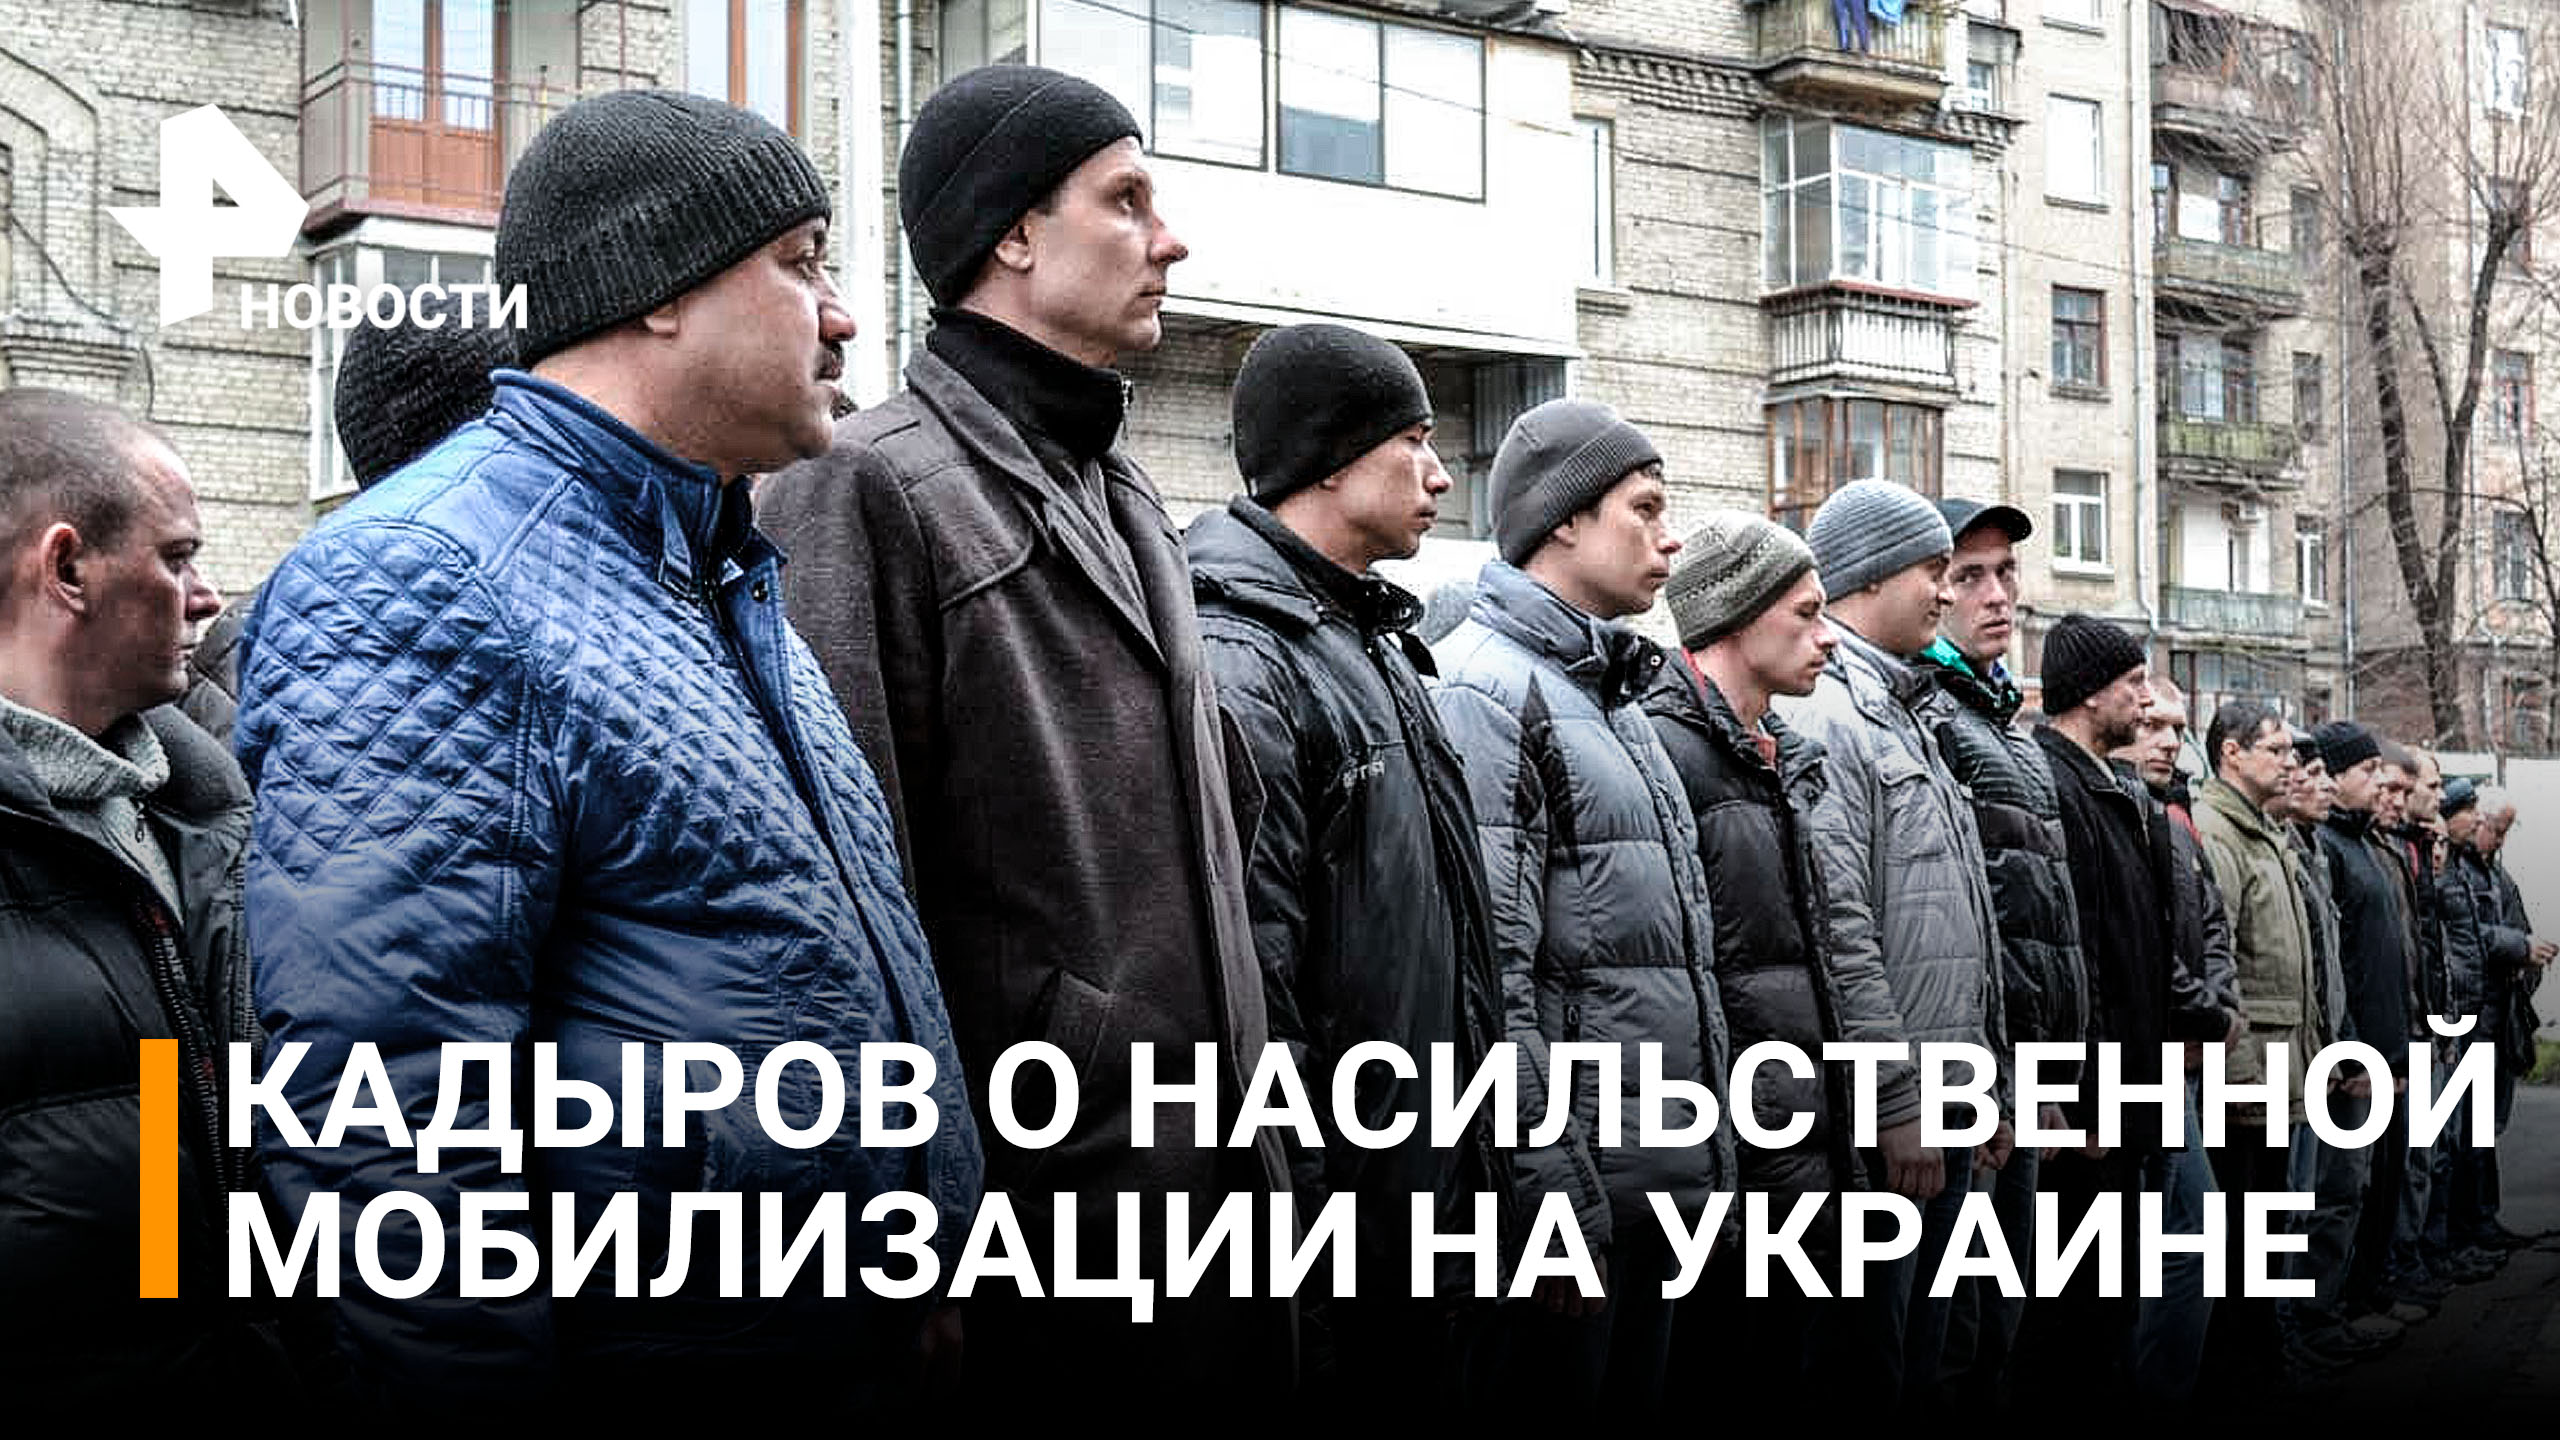 Кадыров заявил о насильственной мобилизации на Украине и поставил условие "Алабаю" / РЕН Новости